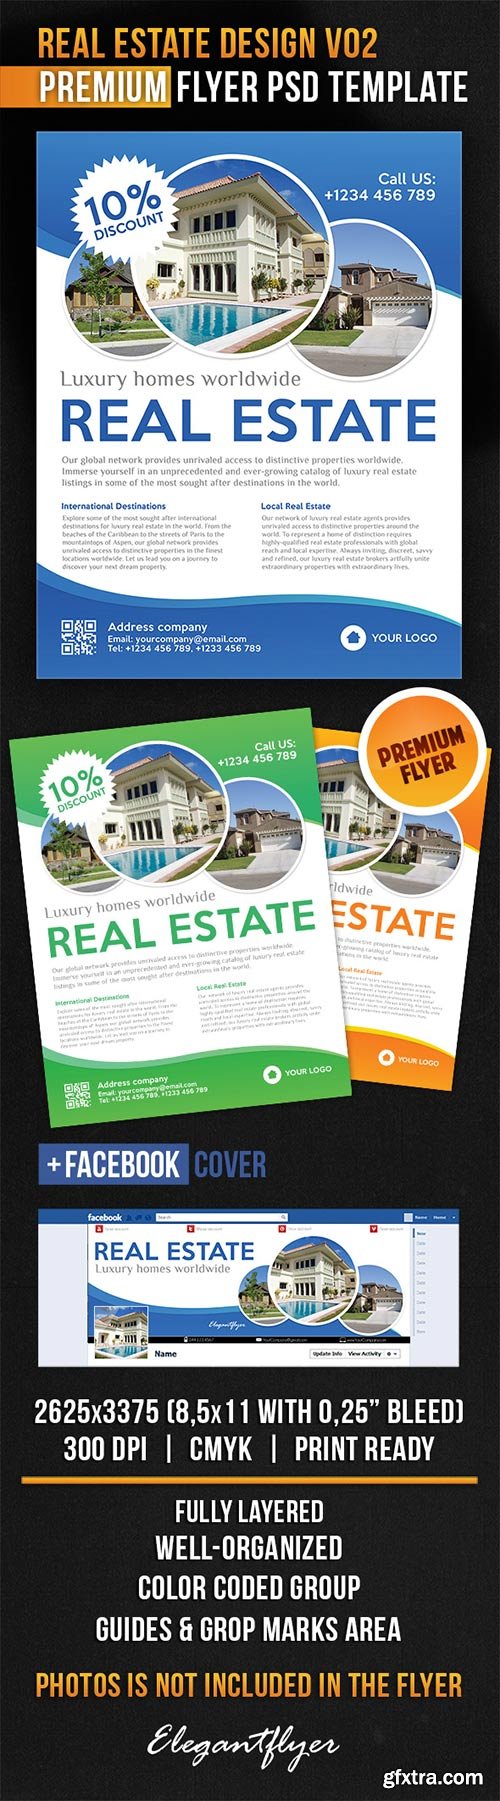 Real Estate Design V02 Flyer PSD Template + Facebook Cover